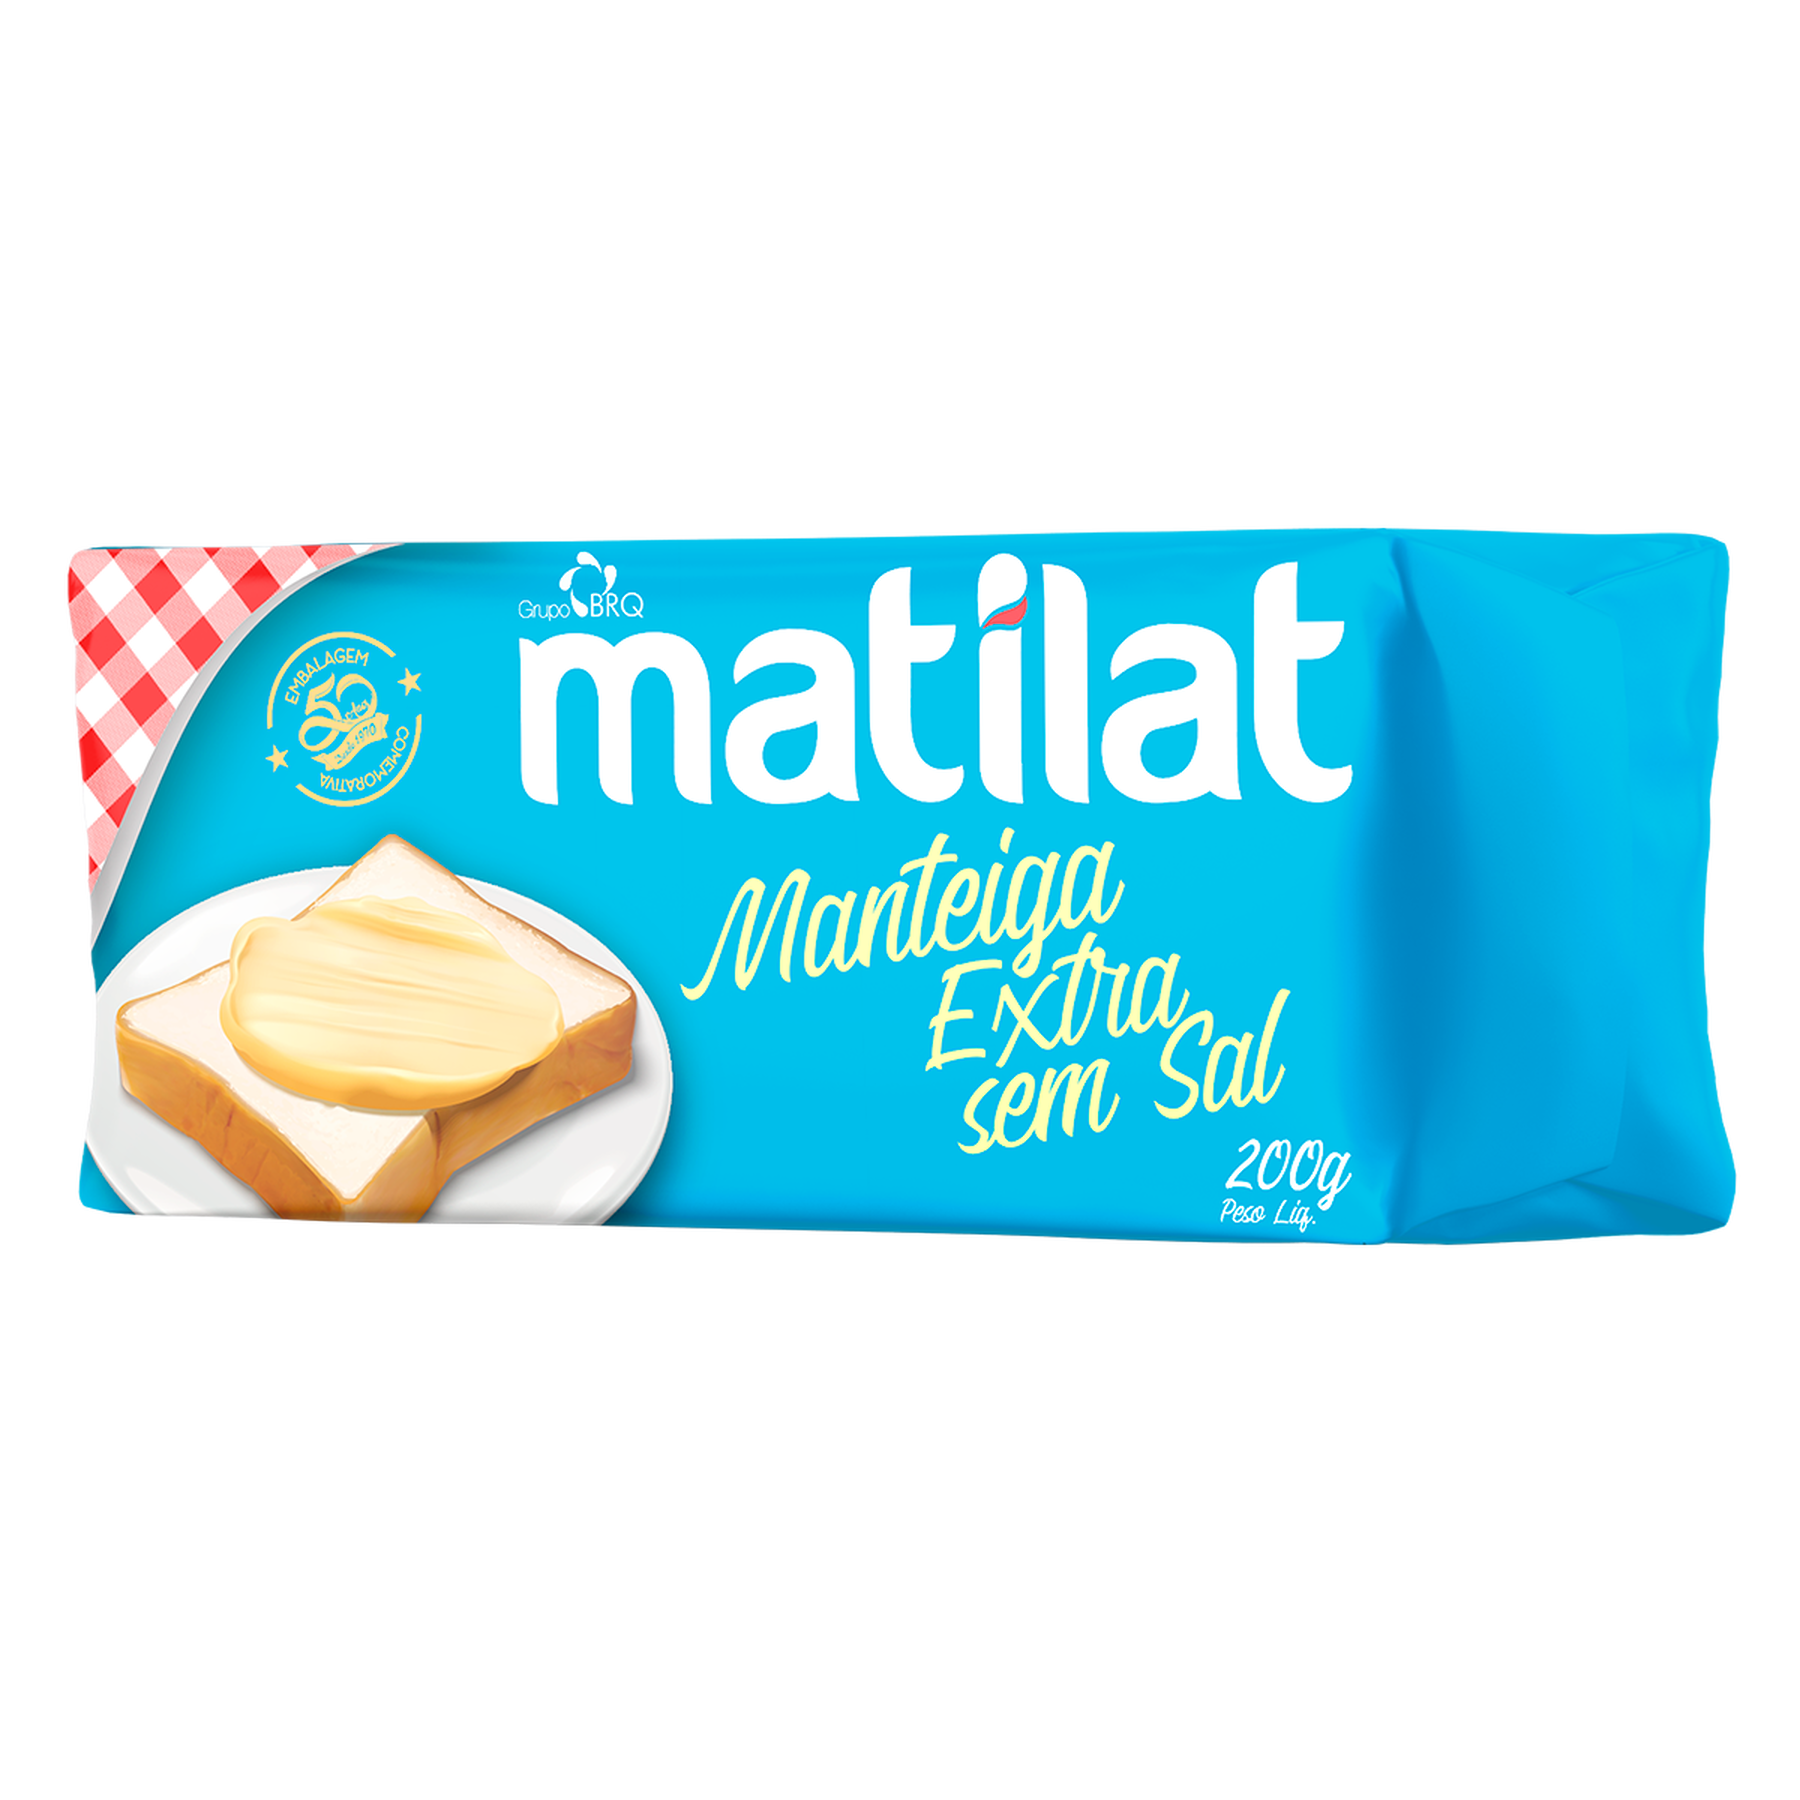 Manteiga Extra sem Sal Matilat 200g